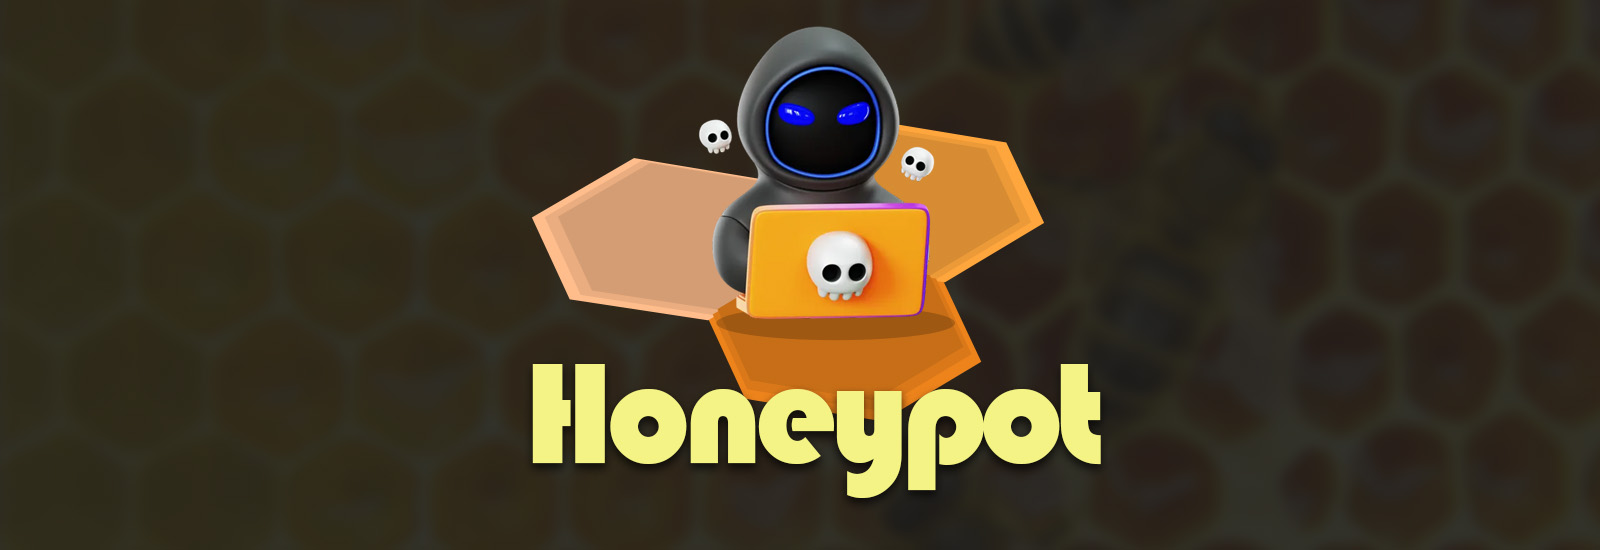 honeypot-header